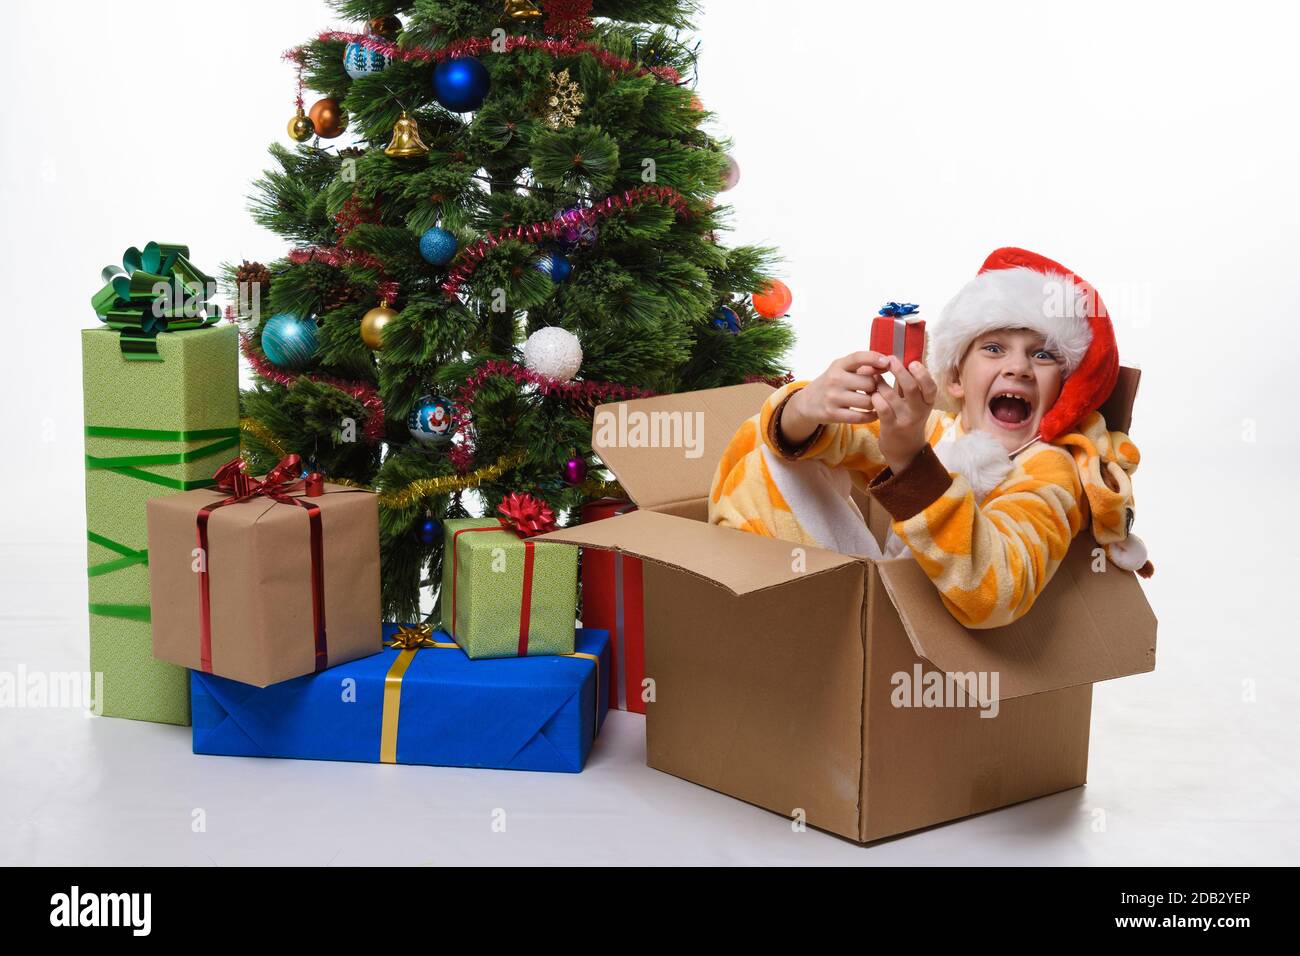 La chica se sienta en una caja de árboles de Navidad cerca del árbol de Navidad y mira alegremente en el marco Foto de stock